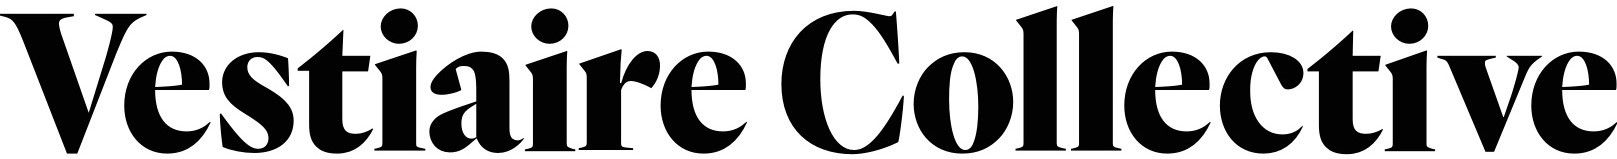 Vestiare Collective logo